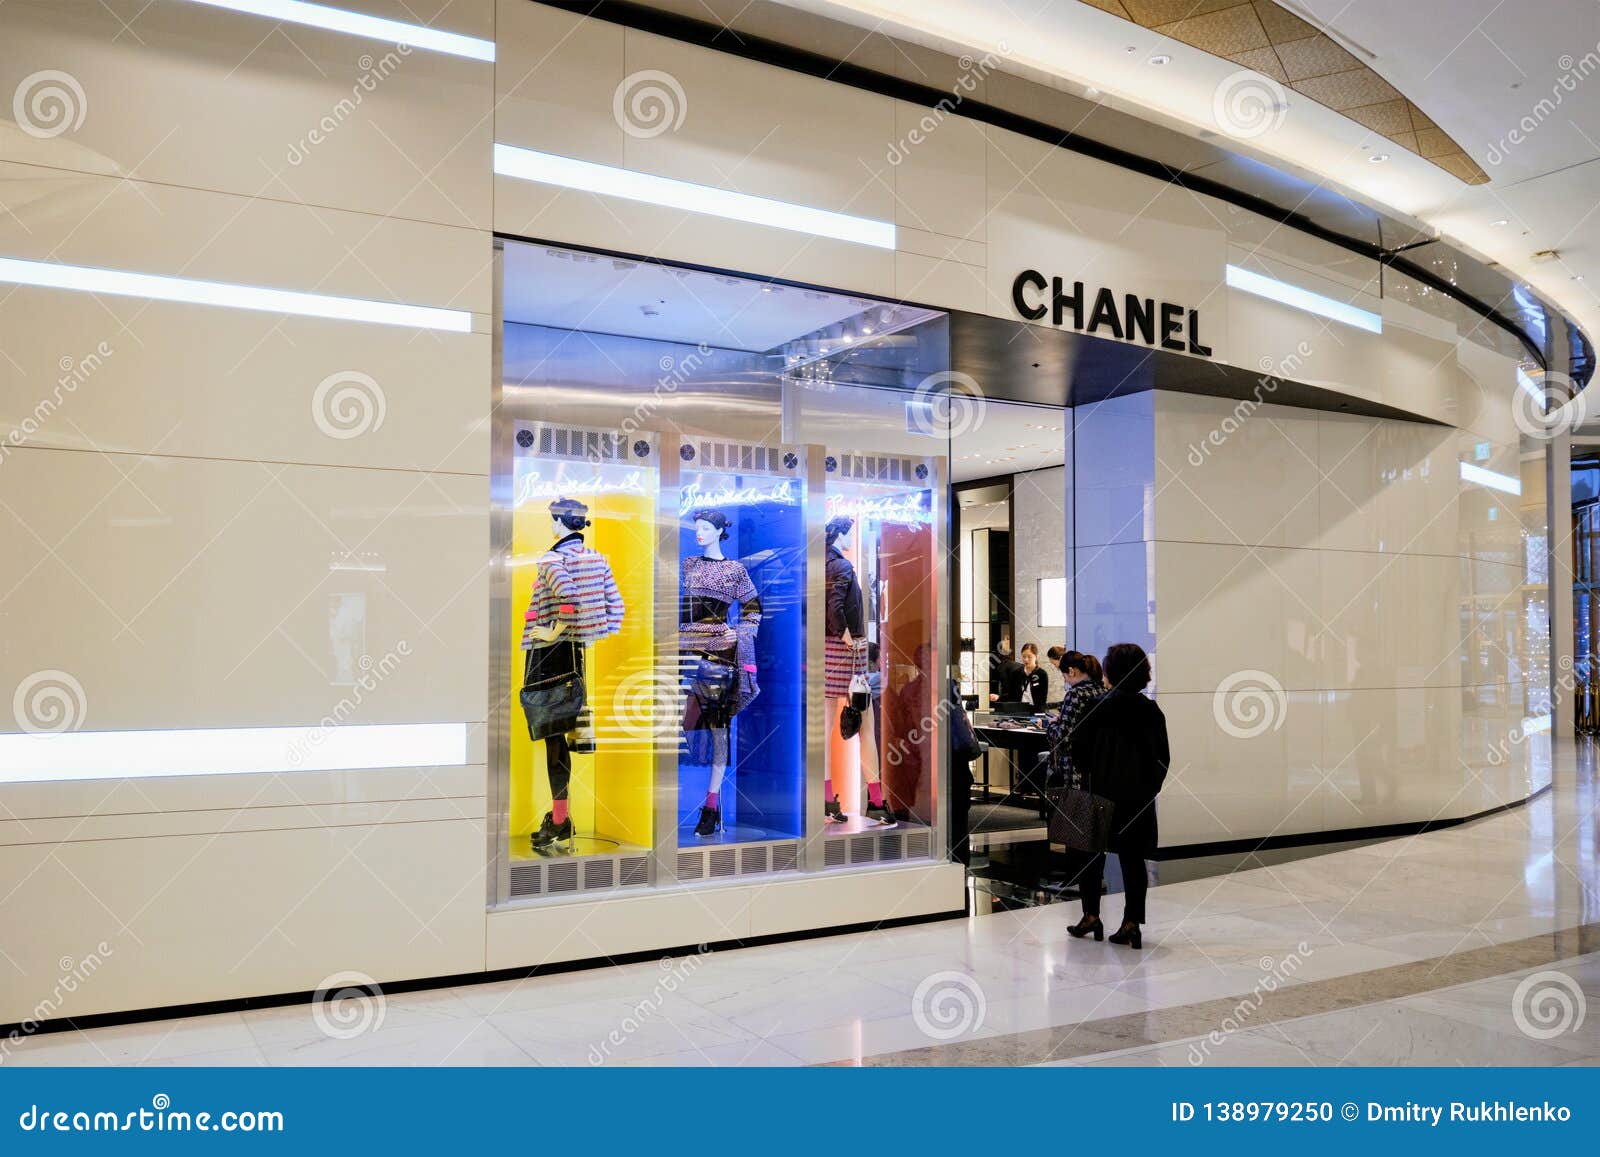 Cửa Hàng Chanel Hàng Đầu Ở Tokyo Nhật Bản Hình ảnh Sẵn có  Tải xuống Hình  ảnh Ngay bây giờ  Bán lẻ Chuodori Street Châu Á  iStock